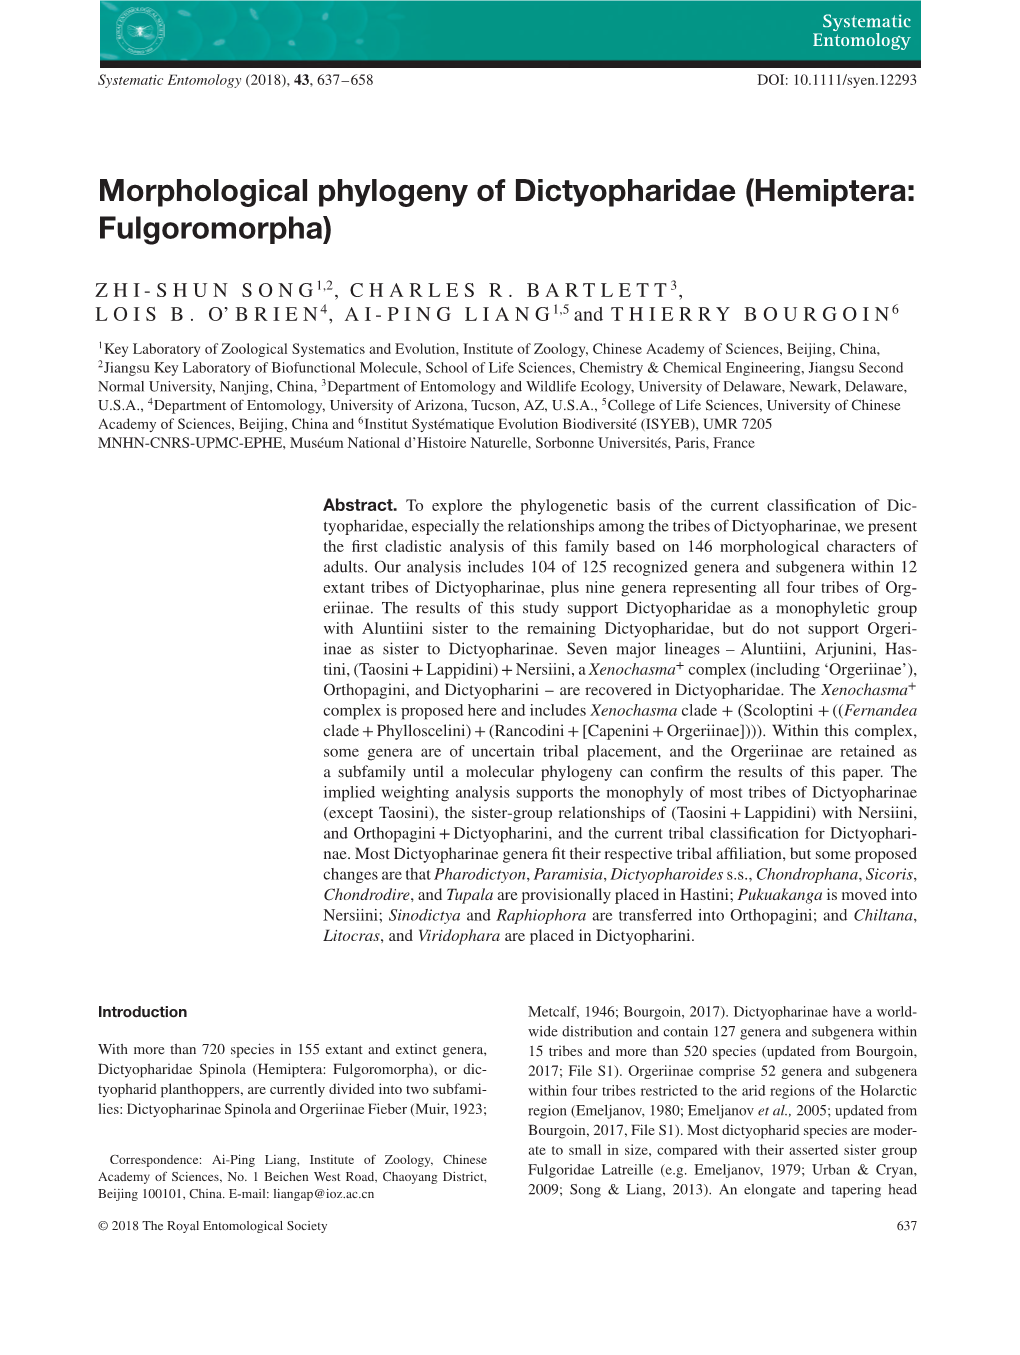 Morphological Phylogeny of Dictyopharidae (Hemiptera: Fulgoromorpha)